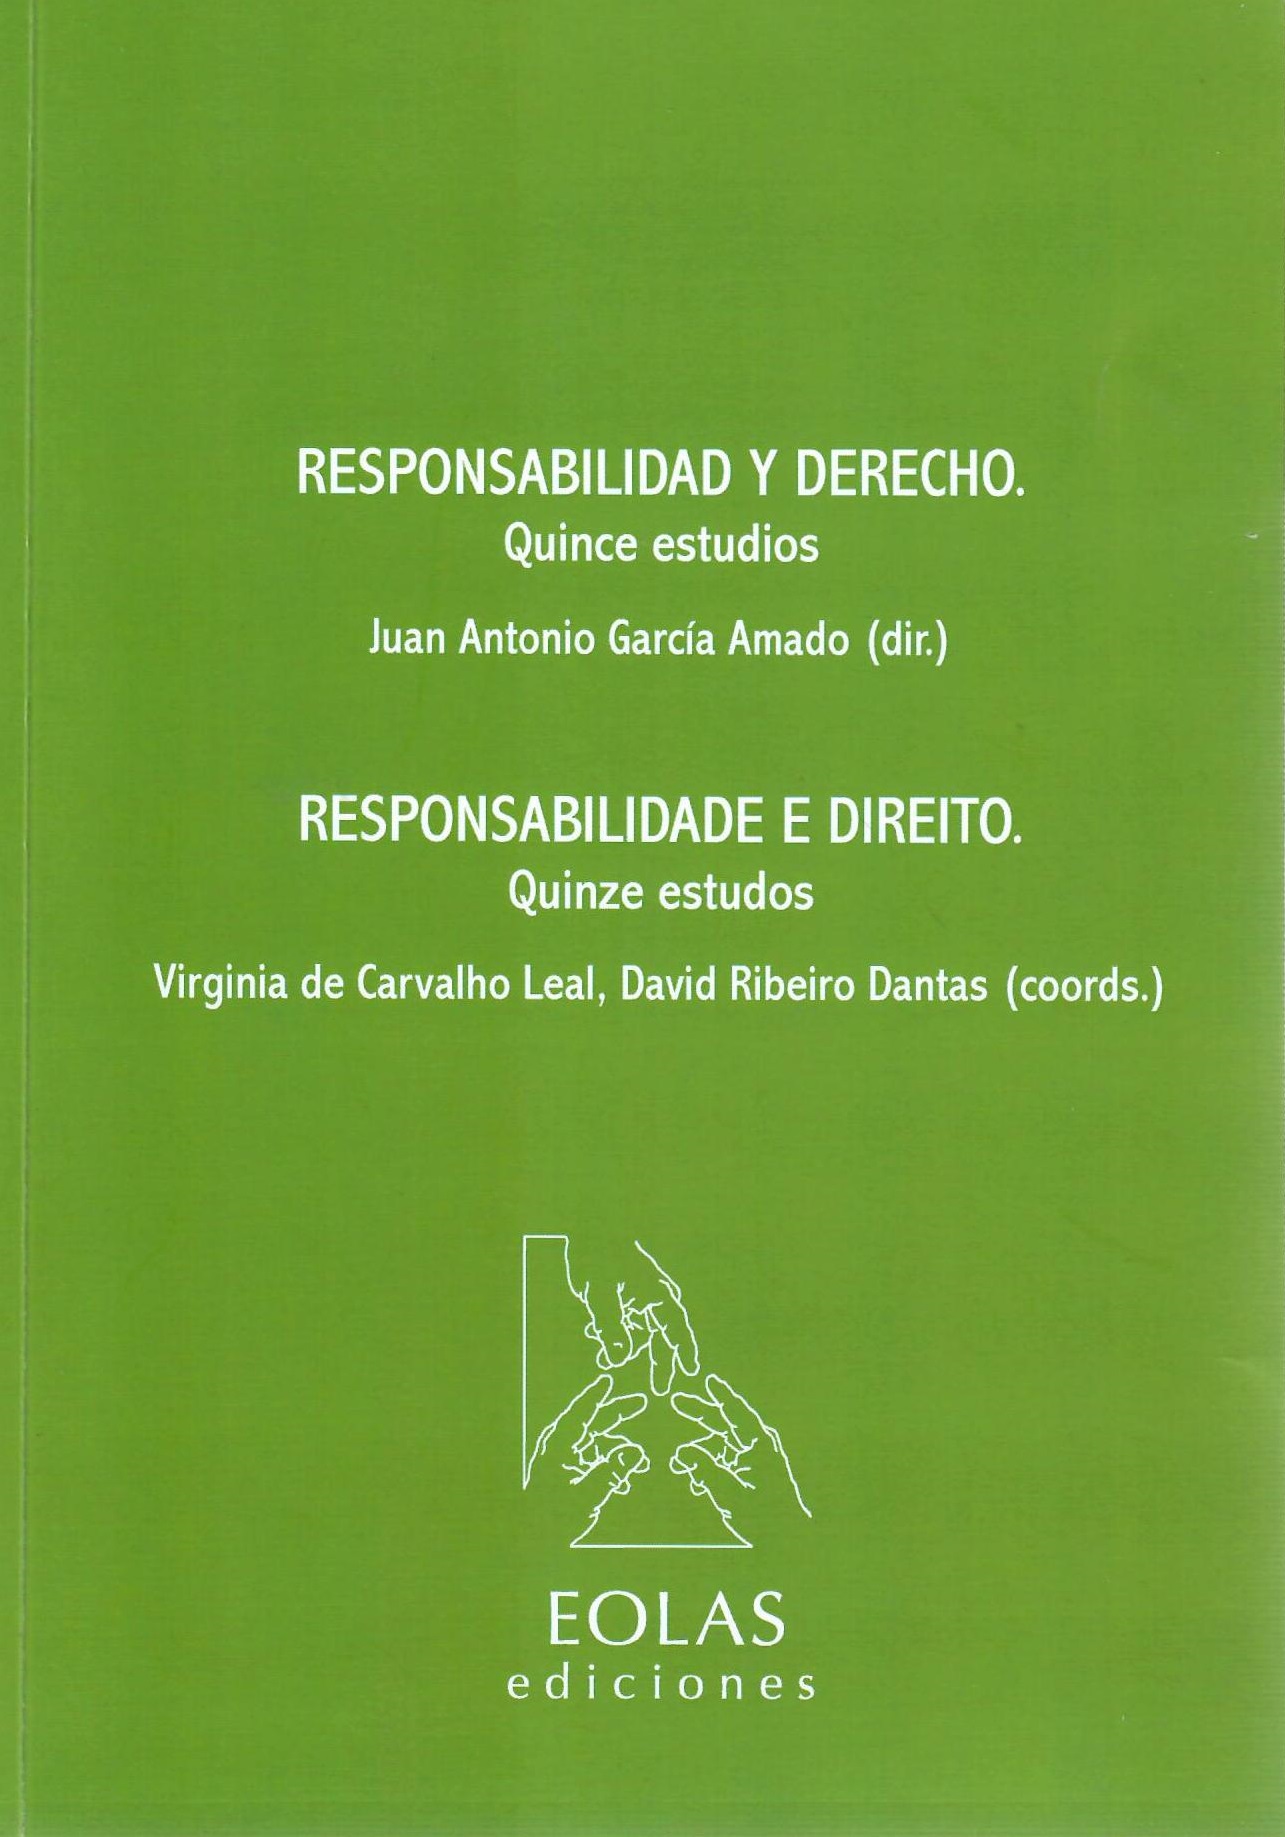 Imagen de portada del libro Responsabilidad y derecho